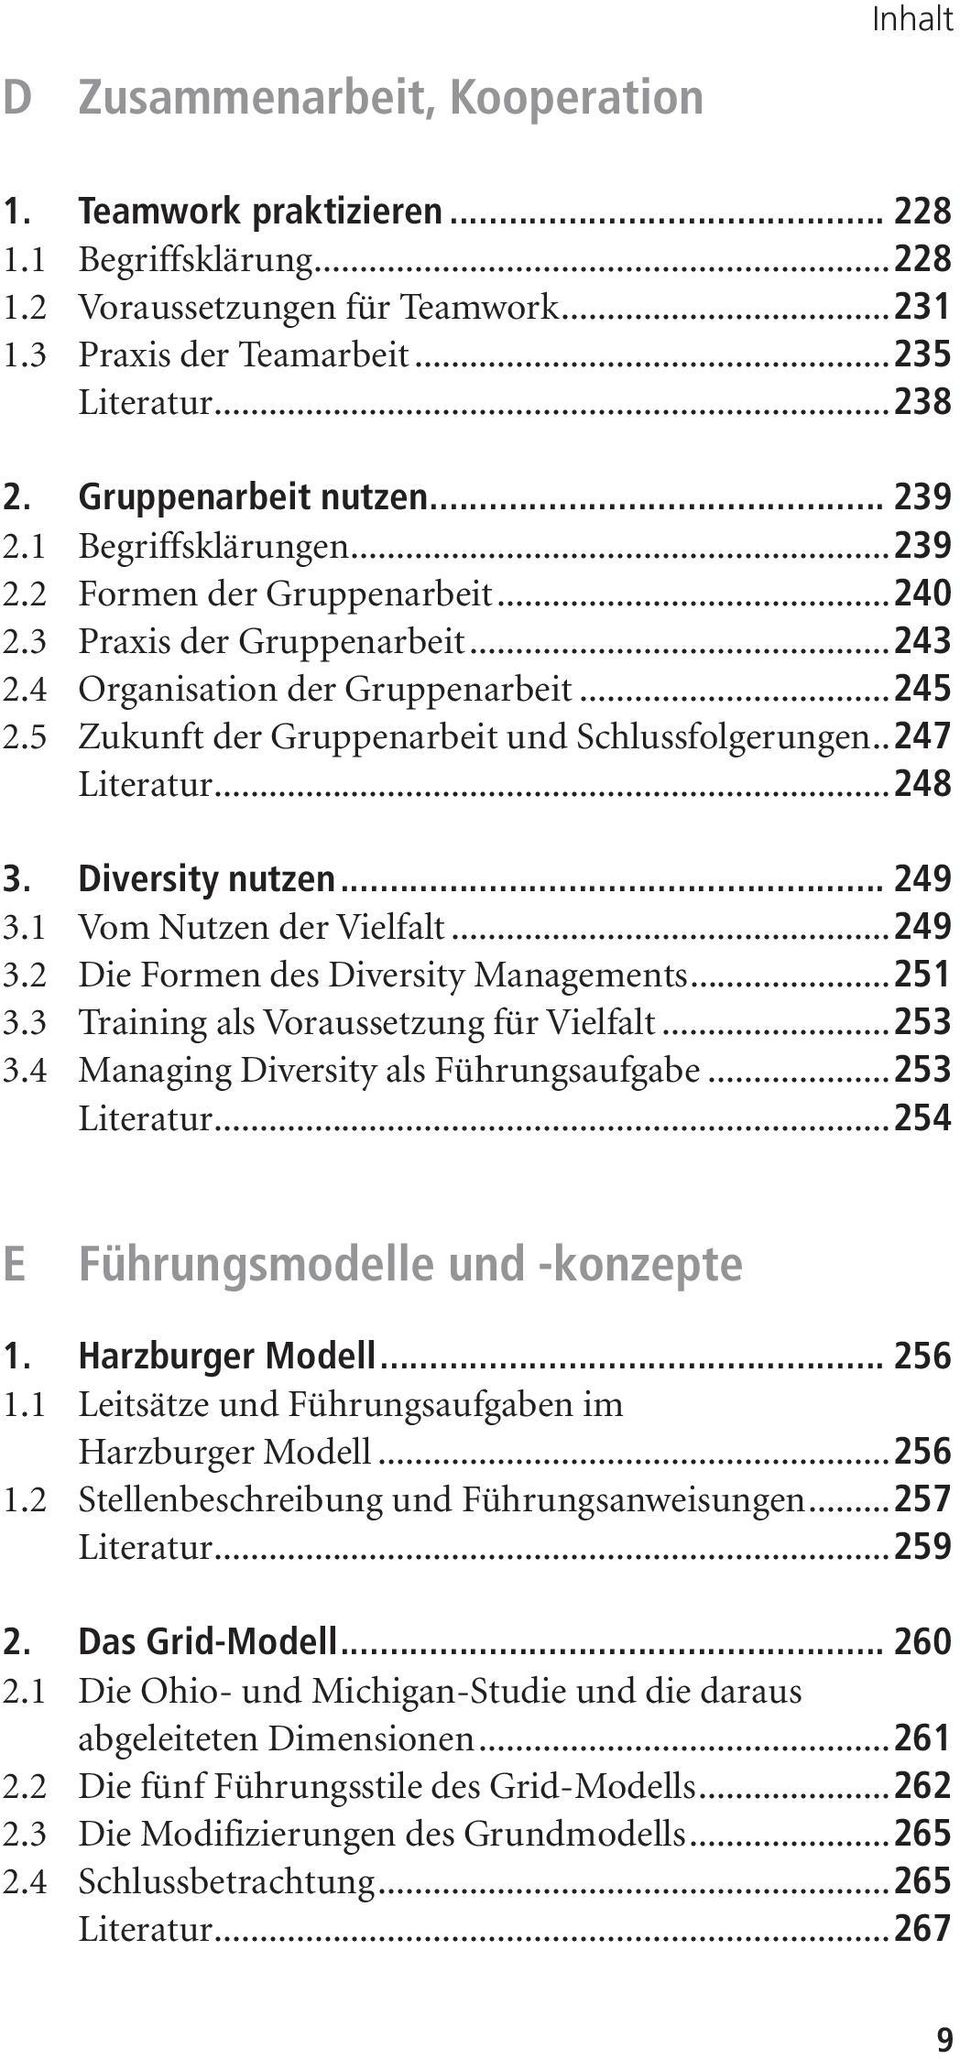 5 Zukunft der Gruppenarbeit und Schlussfolgerungen..247 Literatur...248 3. Diversity nutzen... 249 3.1 Vom Nutzen der Vielfalt...249 3.2 Die Formen des Diversity Managements...251 3.